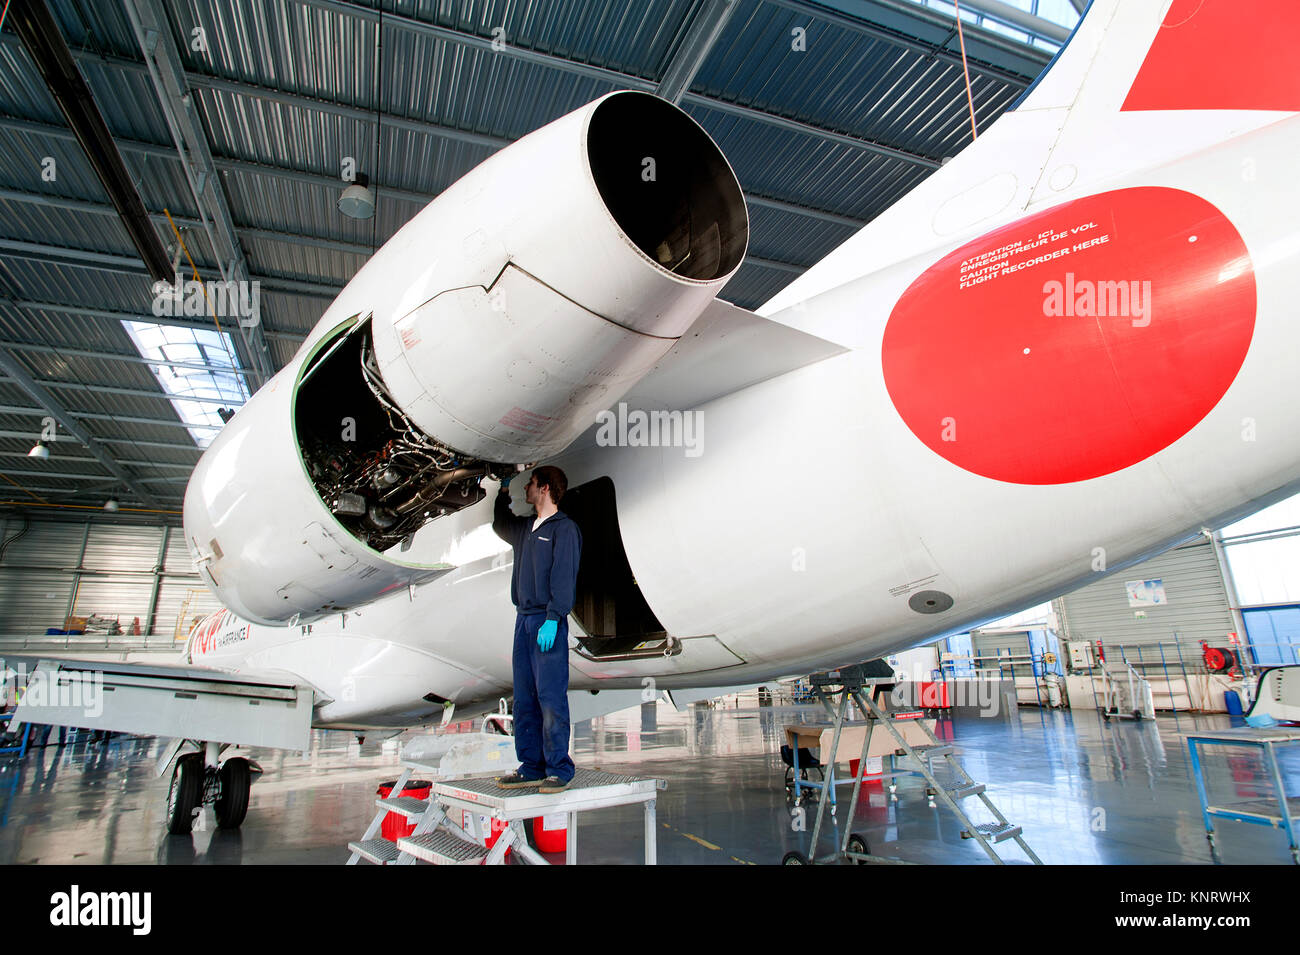 Lille (Nordfrankreich): Flugzeug der Fluggesellschaft Hop in einer Wartung Werkstatt der Flughafen Lille. Jet Engine Maintenance<br><br> Stockfoto